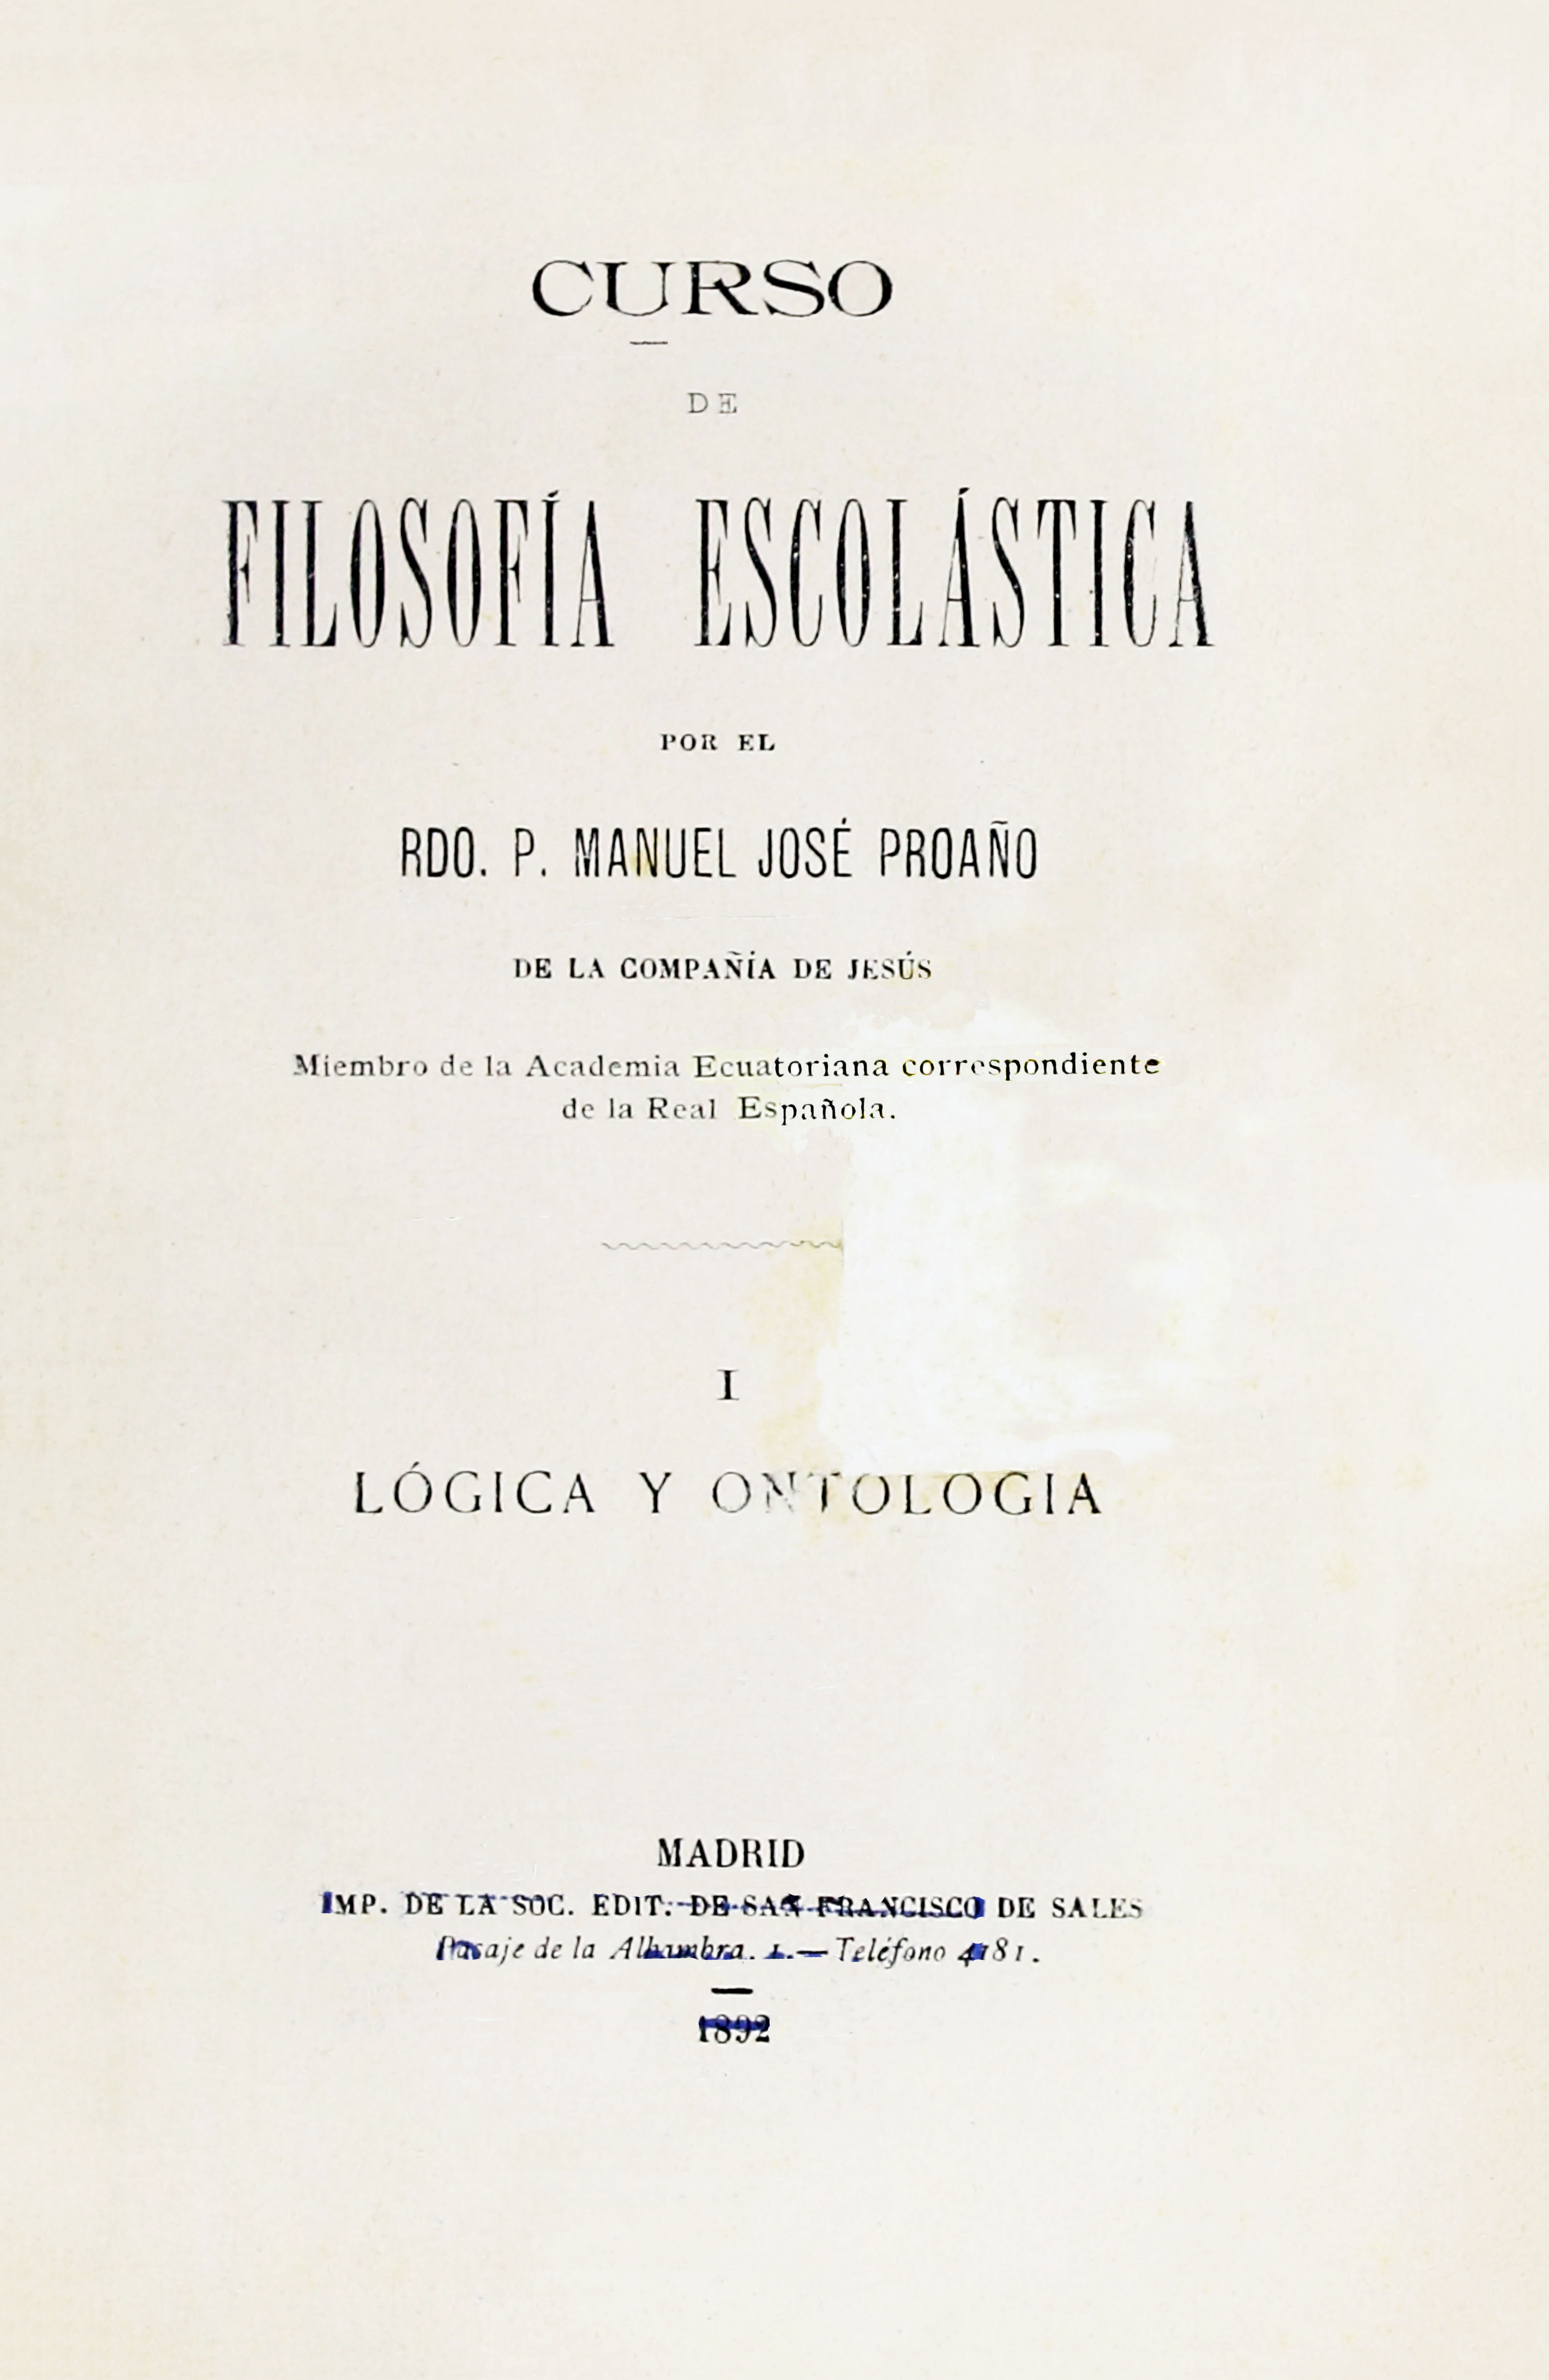 Curso de Filosofía Escolástica por el Rdo. P. Manuel José Proaño de la Compañía de Jesús, Tomo I.